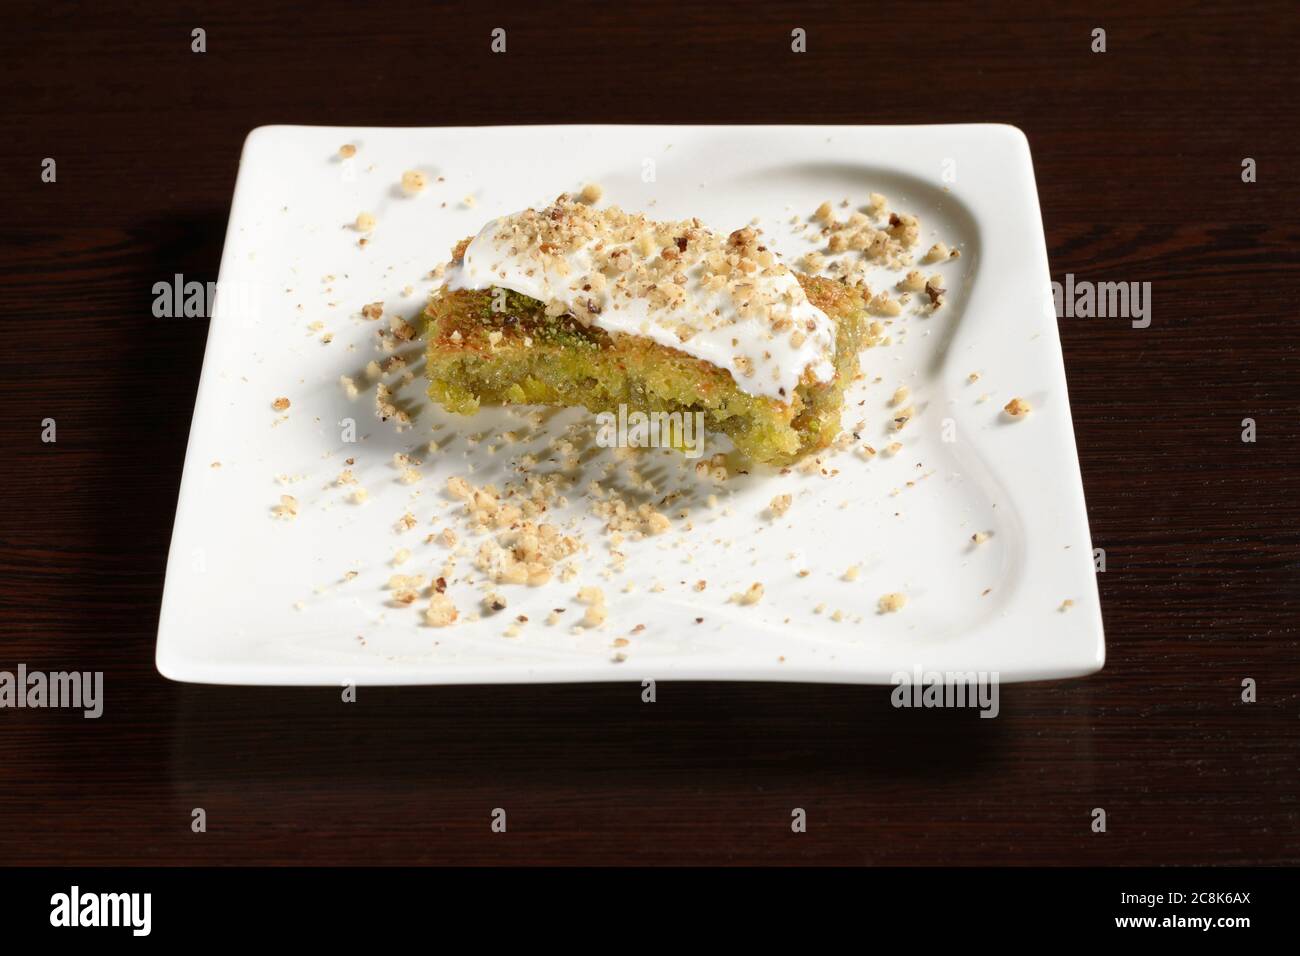 Die Süße von türkischem Pistazien Honig Baklava mit Eis. Fotos für Restaurant- und Cafe-Menüs Stockfoto